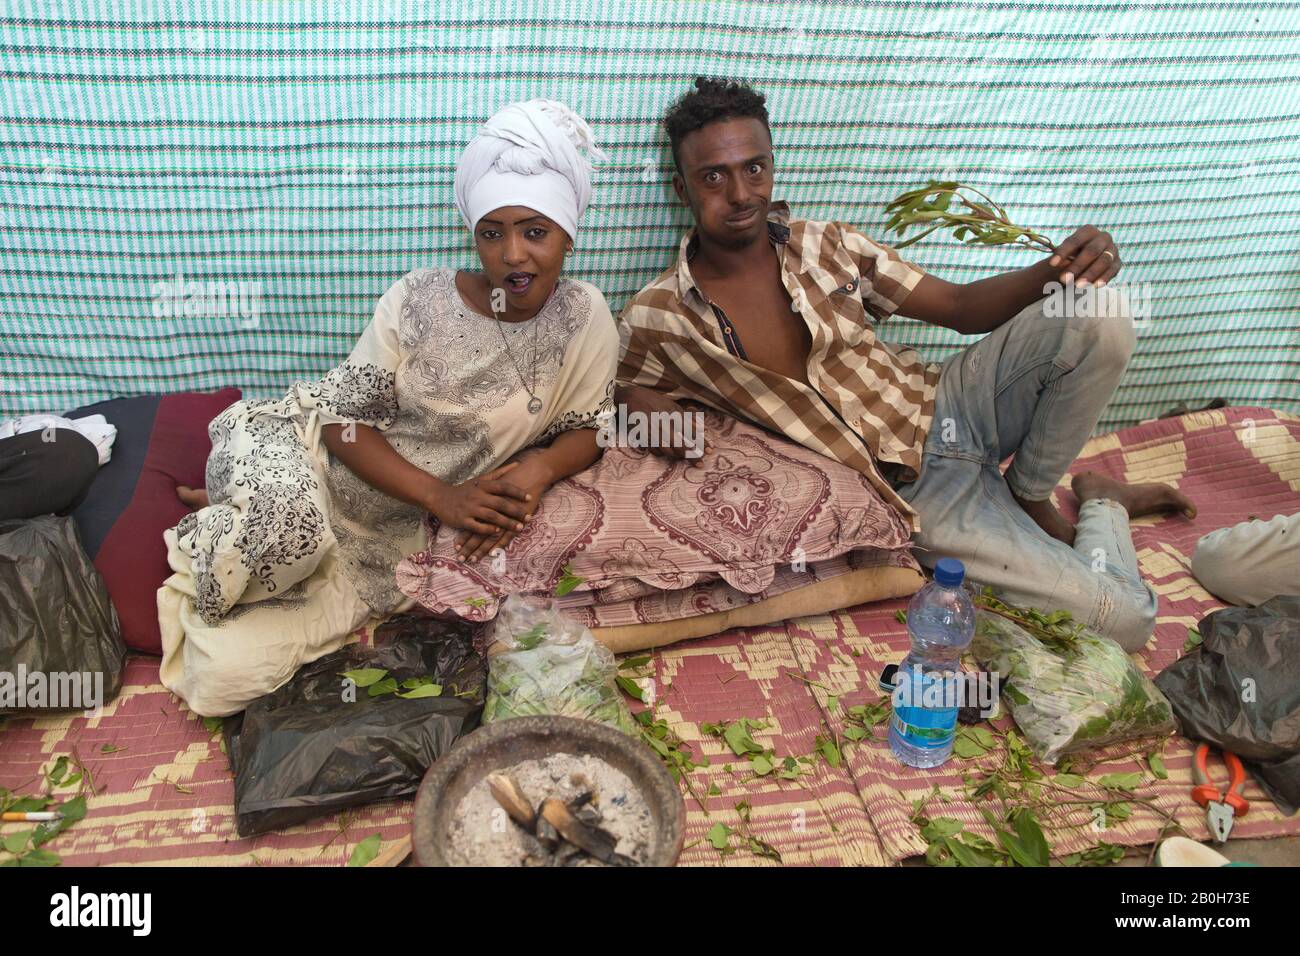 02.11.2019, Adama, Oromiyaa, Ethiopie - une femme et un homme s'assoient sur le chapeau à mâcher. L'homme possède une succursale de khat. 8000 personnes déplacées à l'intérieur du pays Banque D'Images